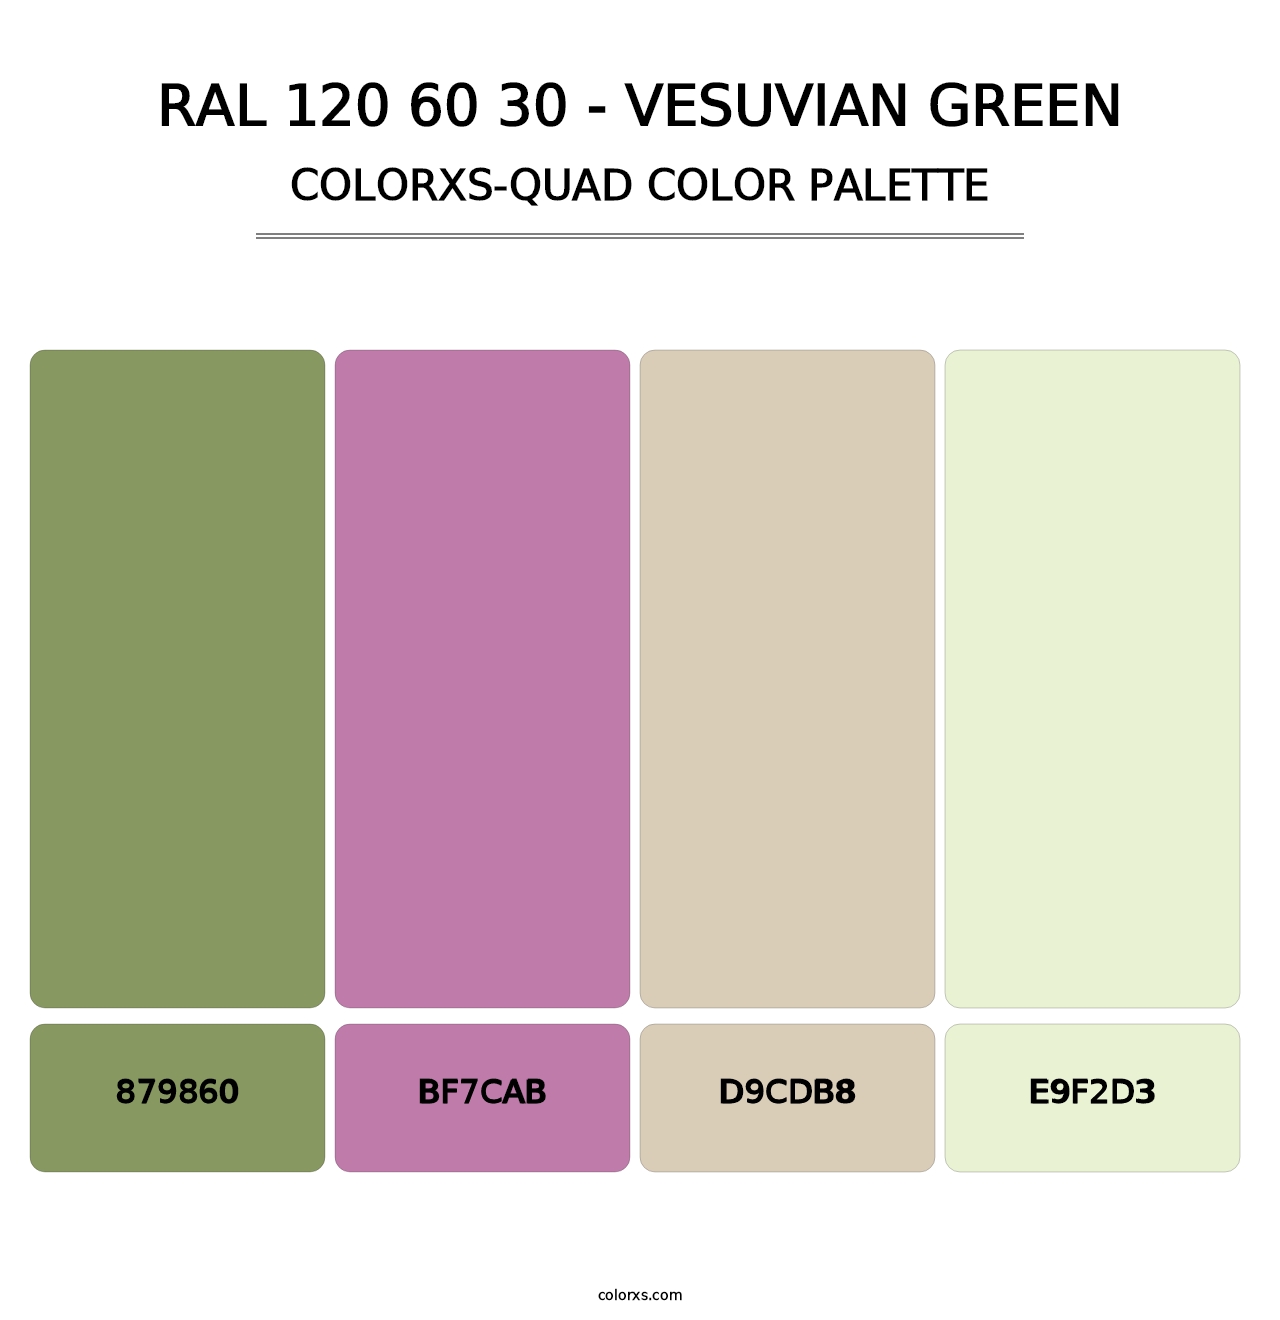 RAL 120 60 30 - Vesuvian Green - Colorxs Quad Palette